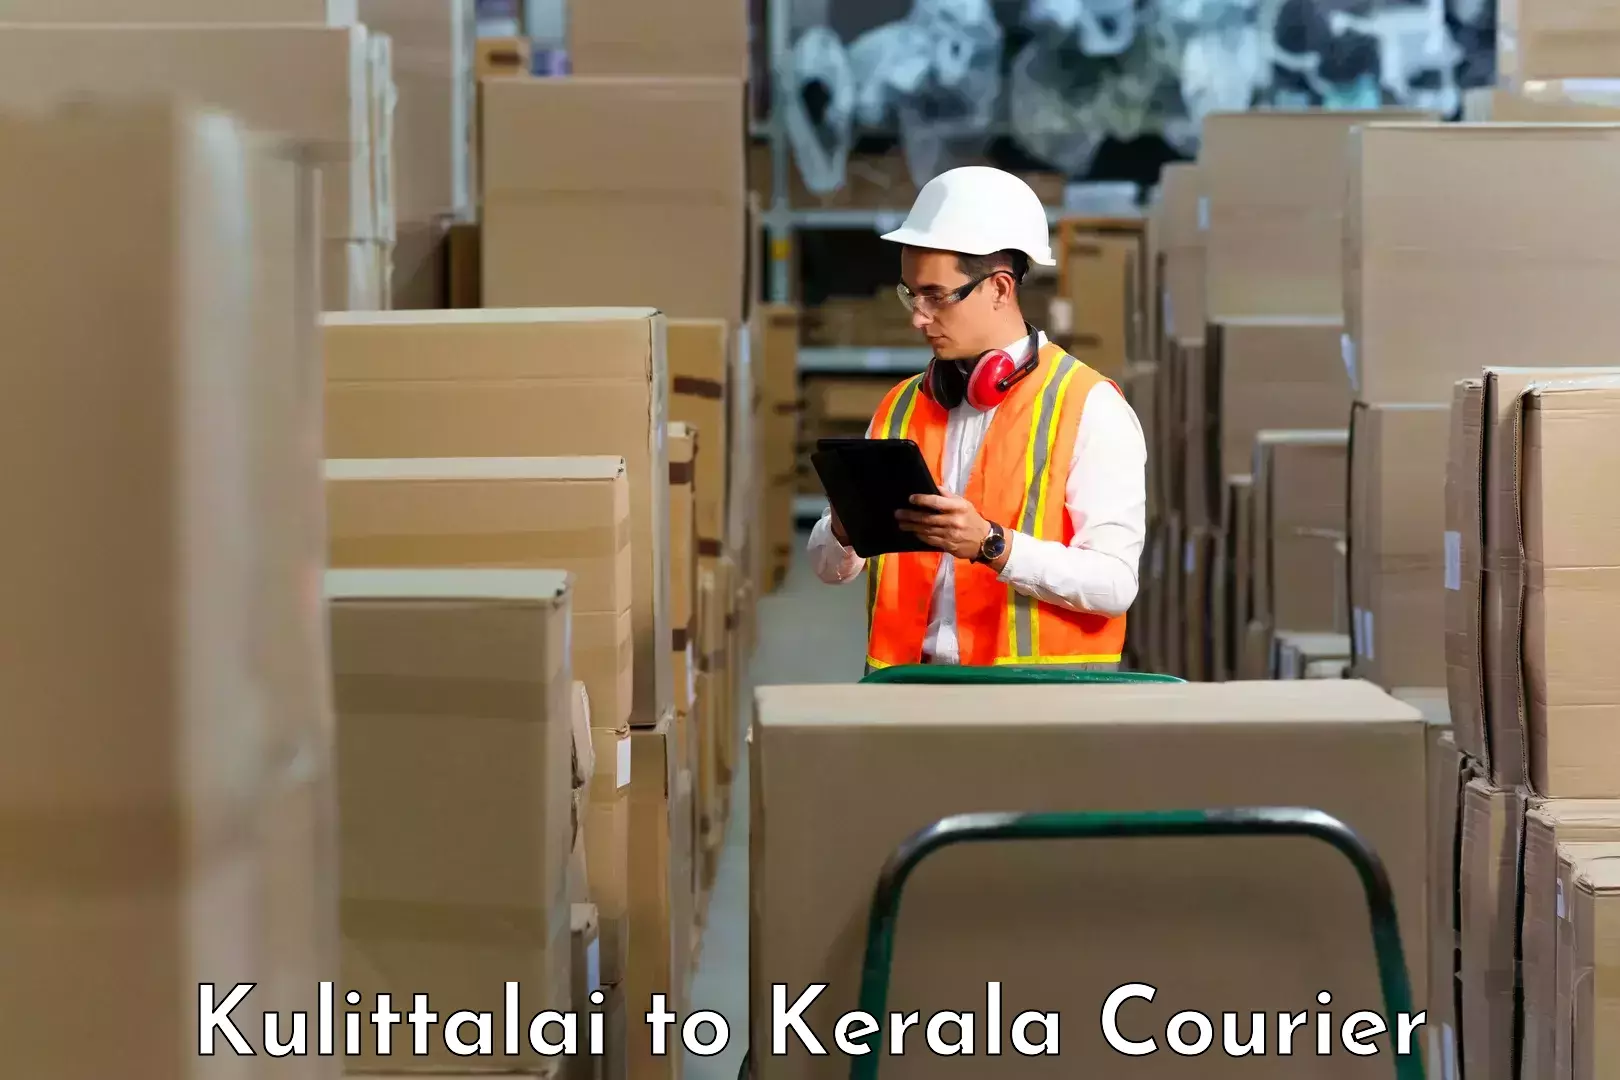 Next-day delivery options Kulittalai to IIIT Kottayam